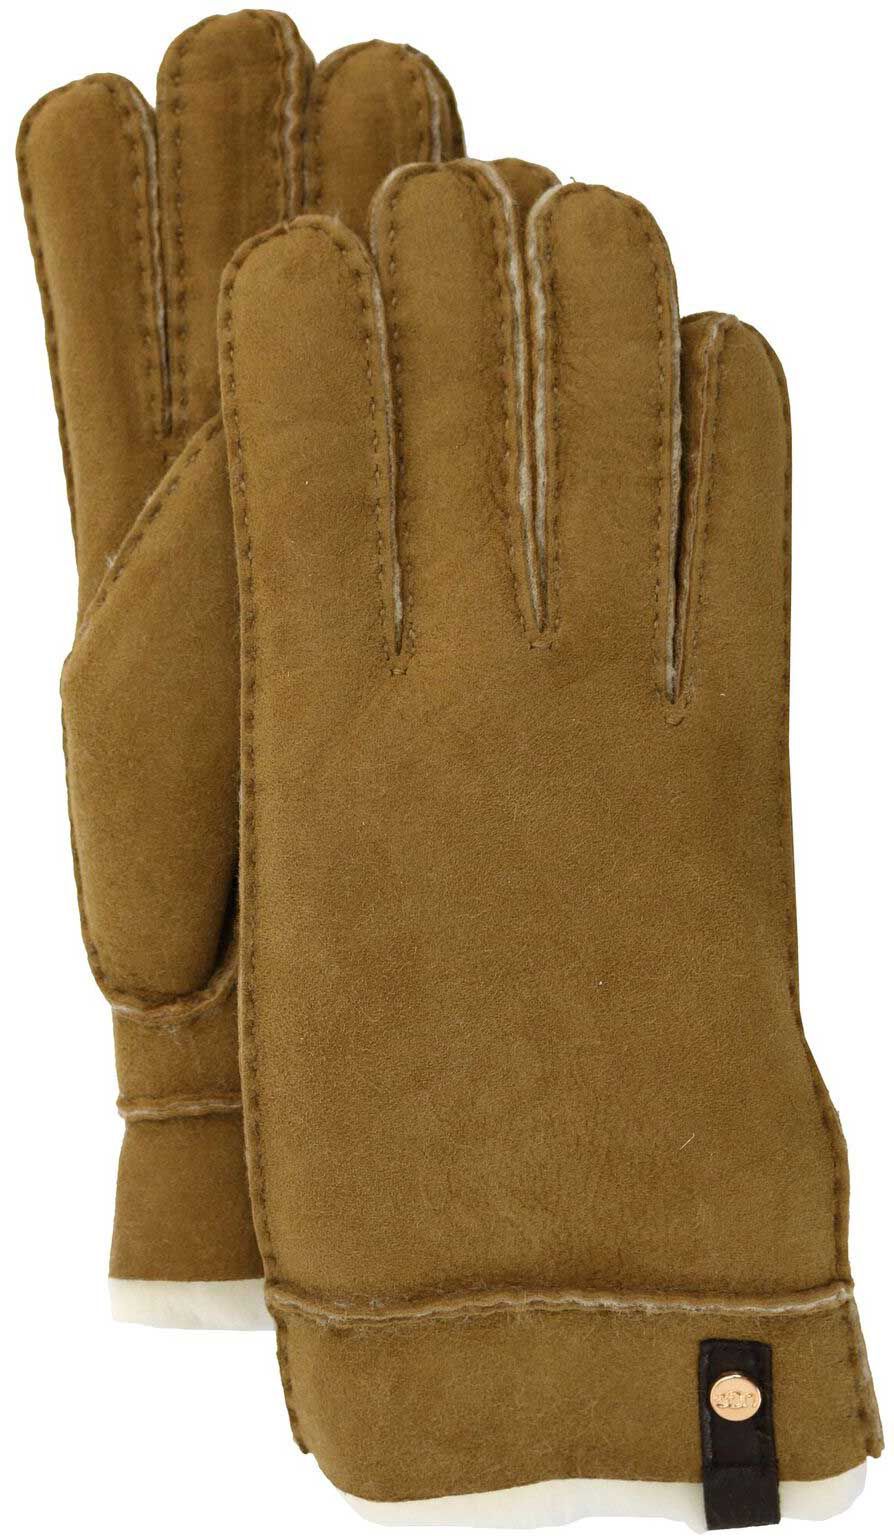 ugg gloves